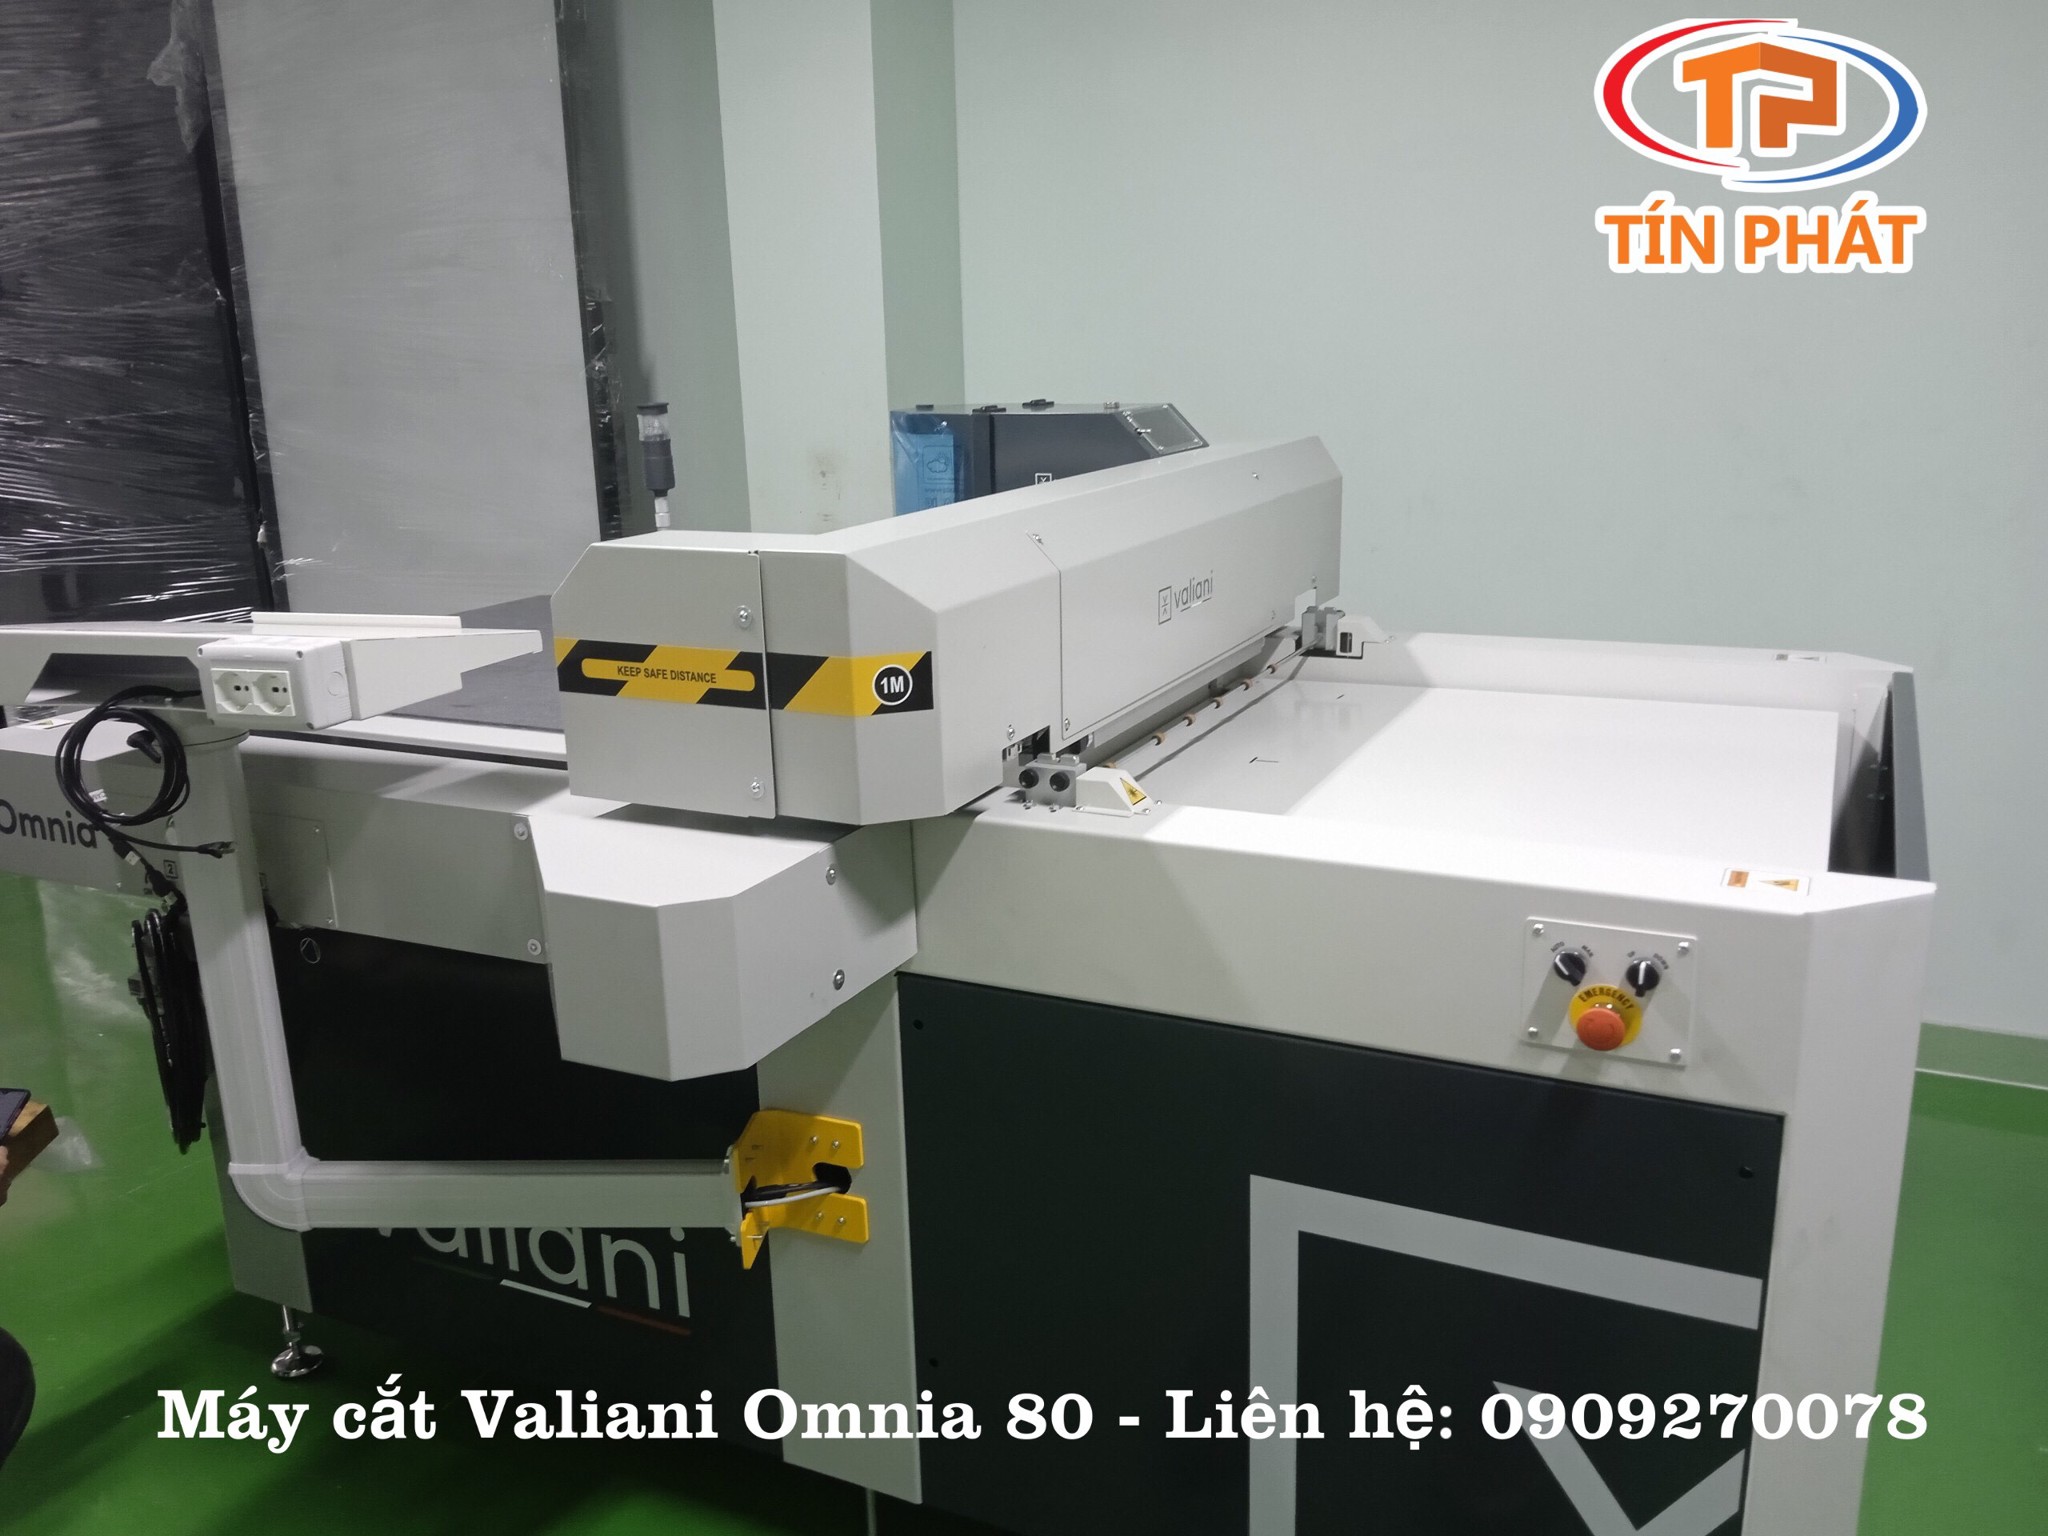 Công ty Tín Phát đã bàn giao máy cắt Valiani Omnia 80 đầu tiên tại Việt Nam